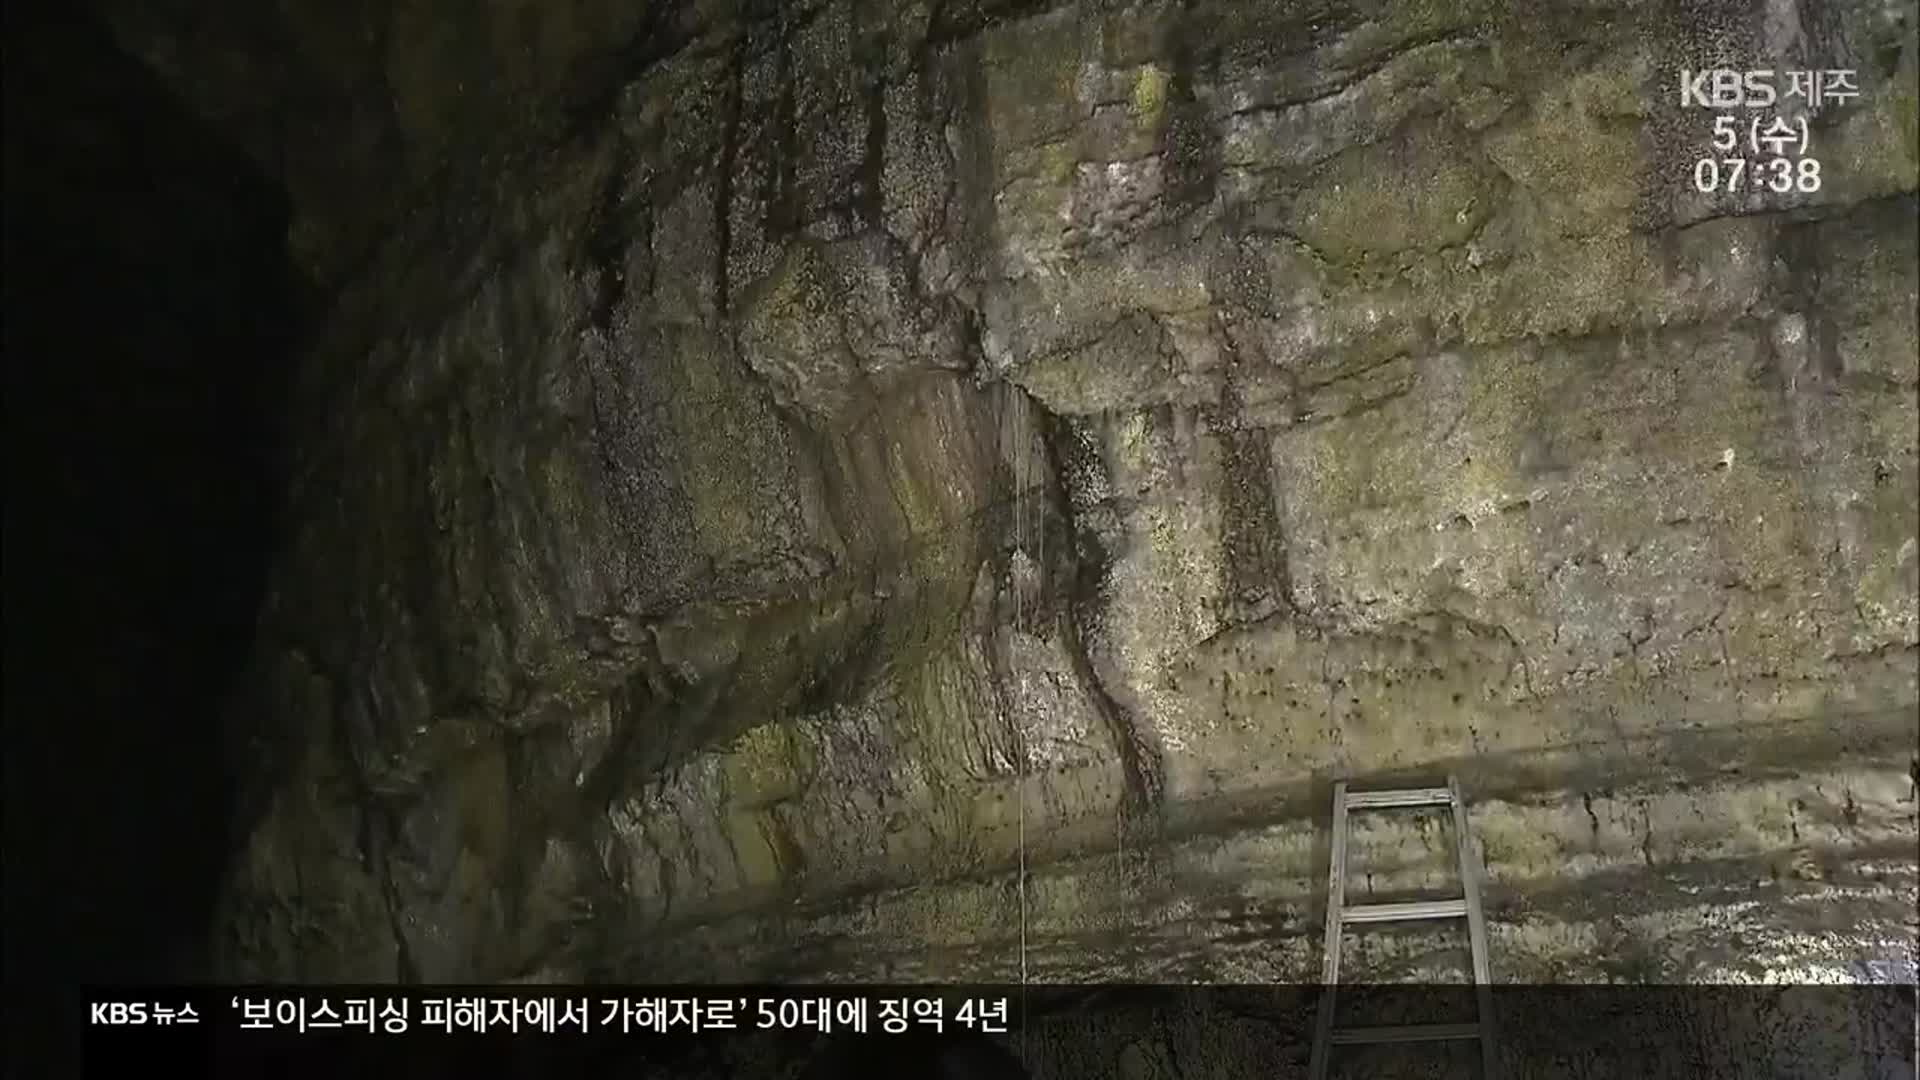 용암이 빚어낸 동굴의 자태 ‘비공개 구간 공개’